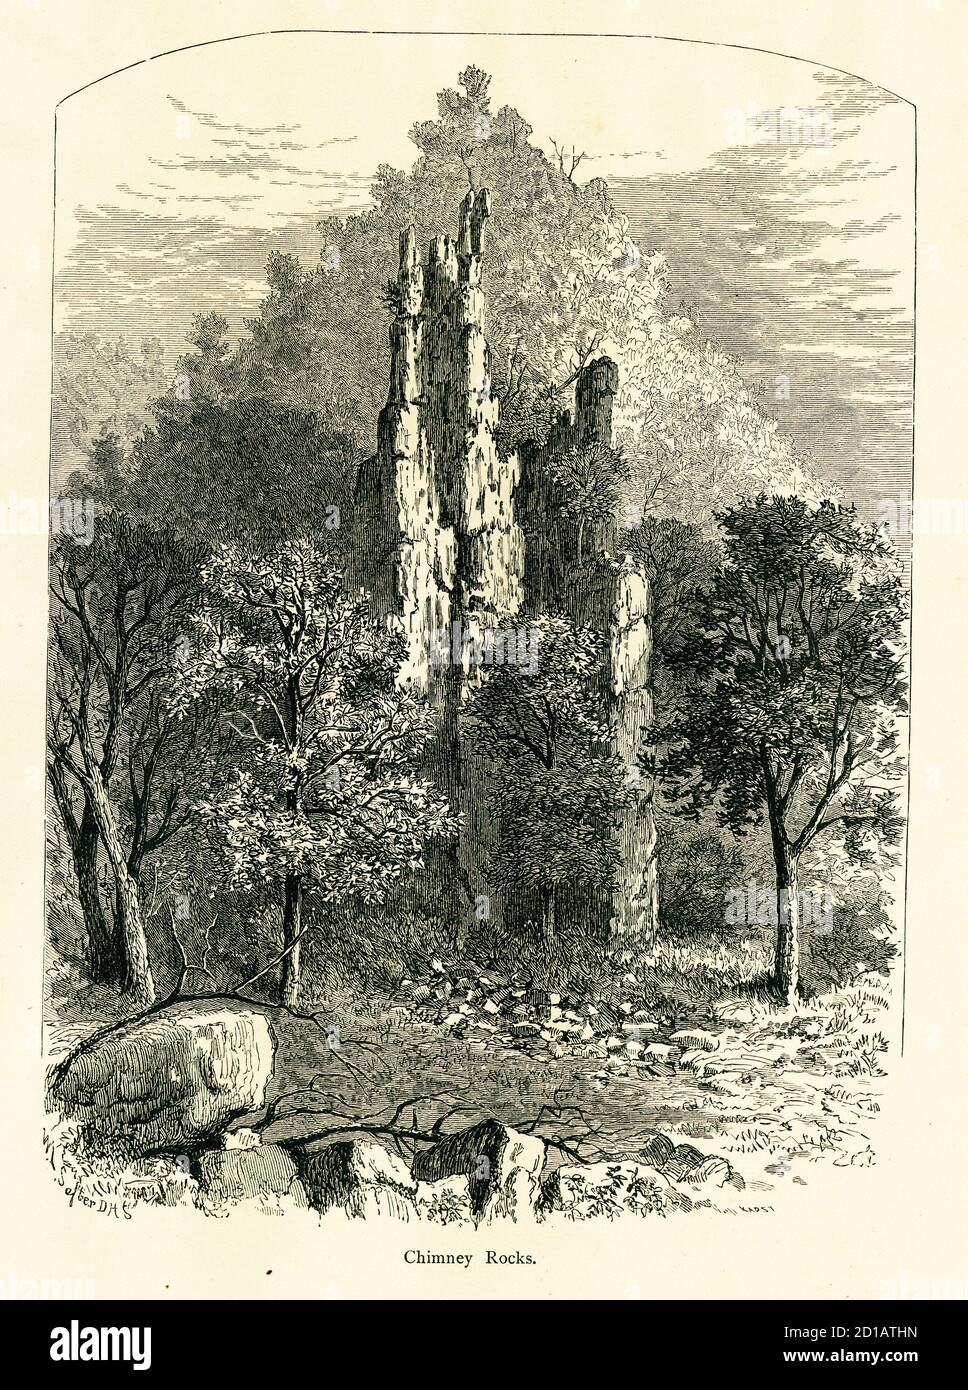 Holzstich von Chimney Rocks, gelegen im George Washington National Forest, West Virginia, USA. Illustration veröffentlicht im malerischen Amerika oder Th Stockfoto